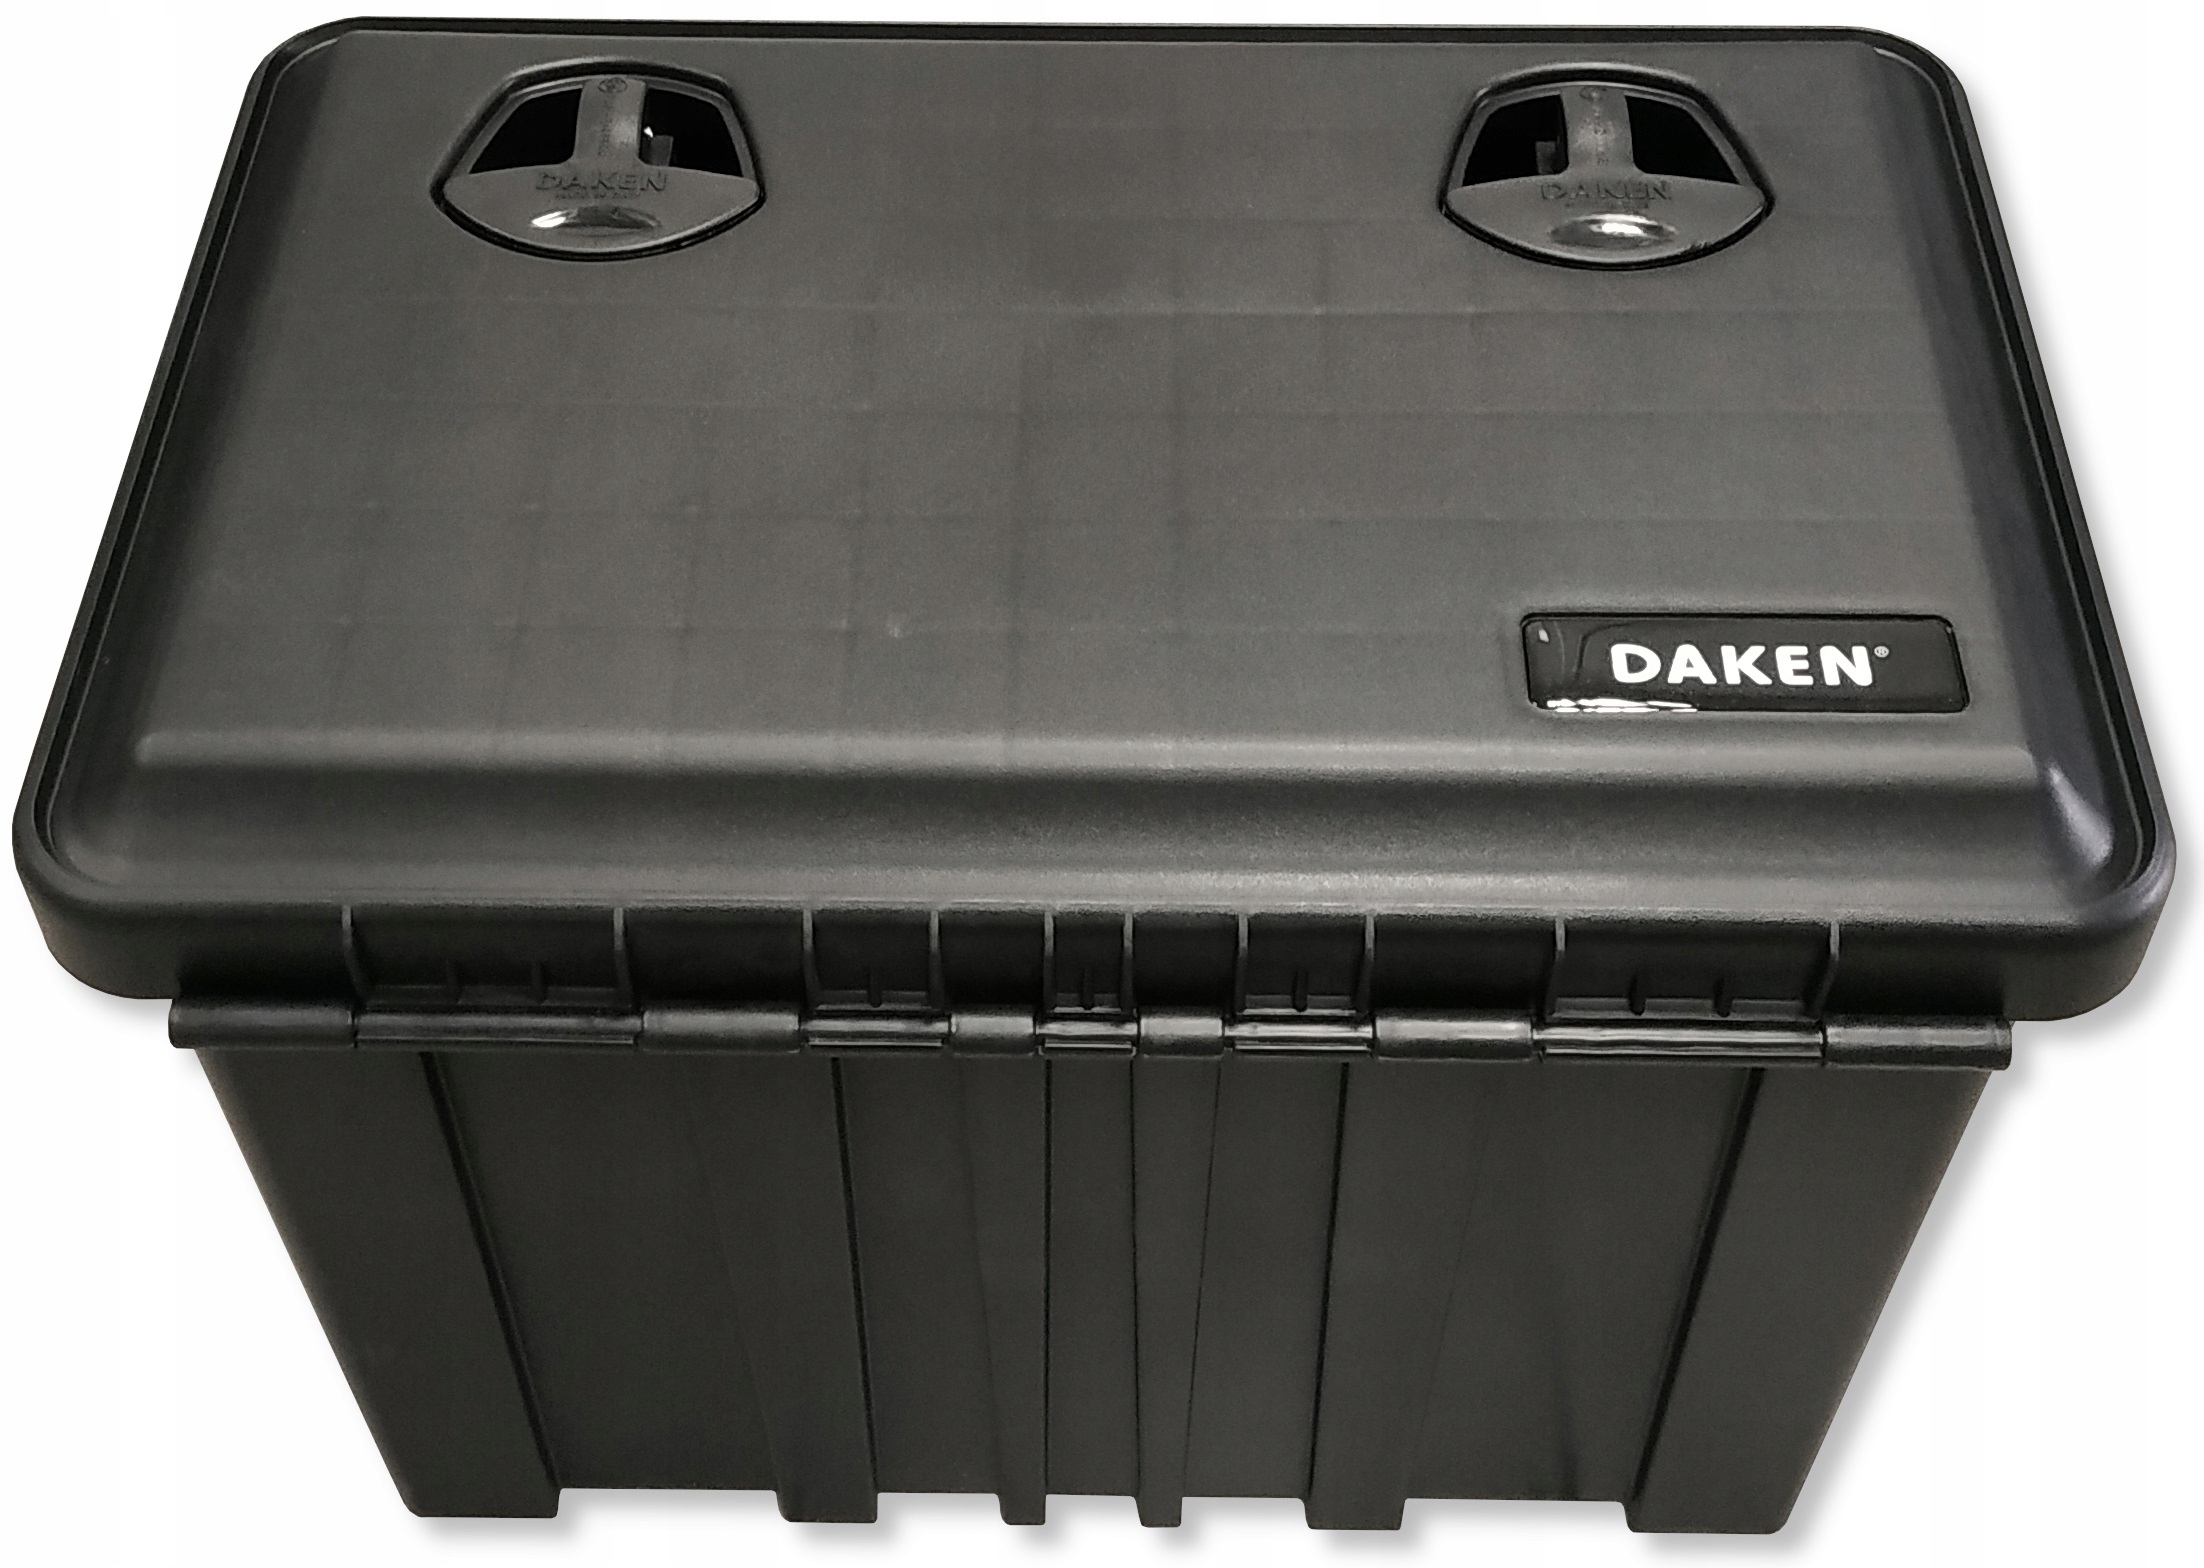 Купить ящик инструментальный для грузовика. Ящик Daken just 600. Daken 600 инструментальный ящик. Ящик инструментальный 600*530*600. 81104023 Daken ящик инструментальный just 600 разм.600x415x460.